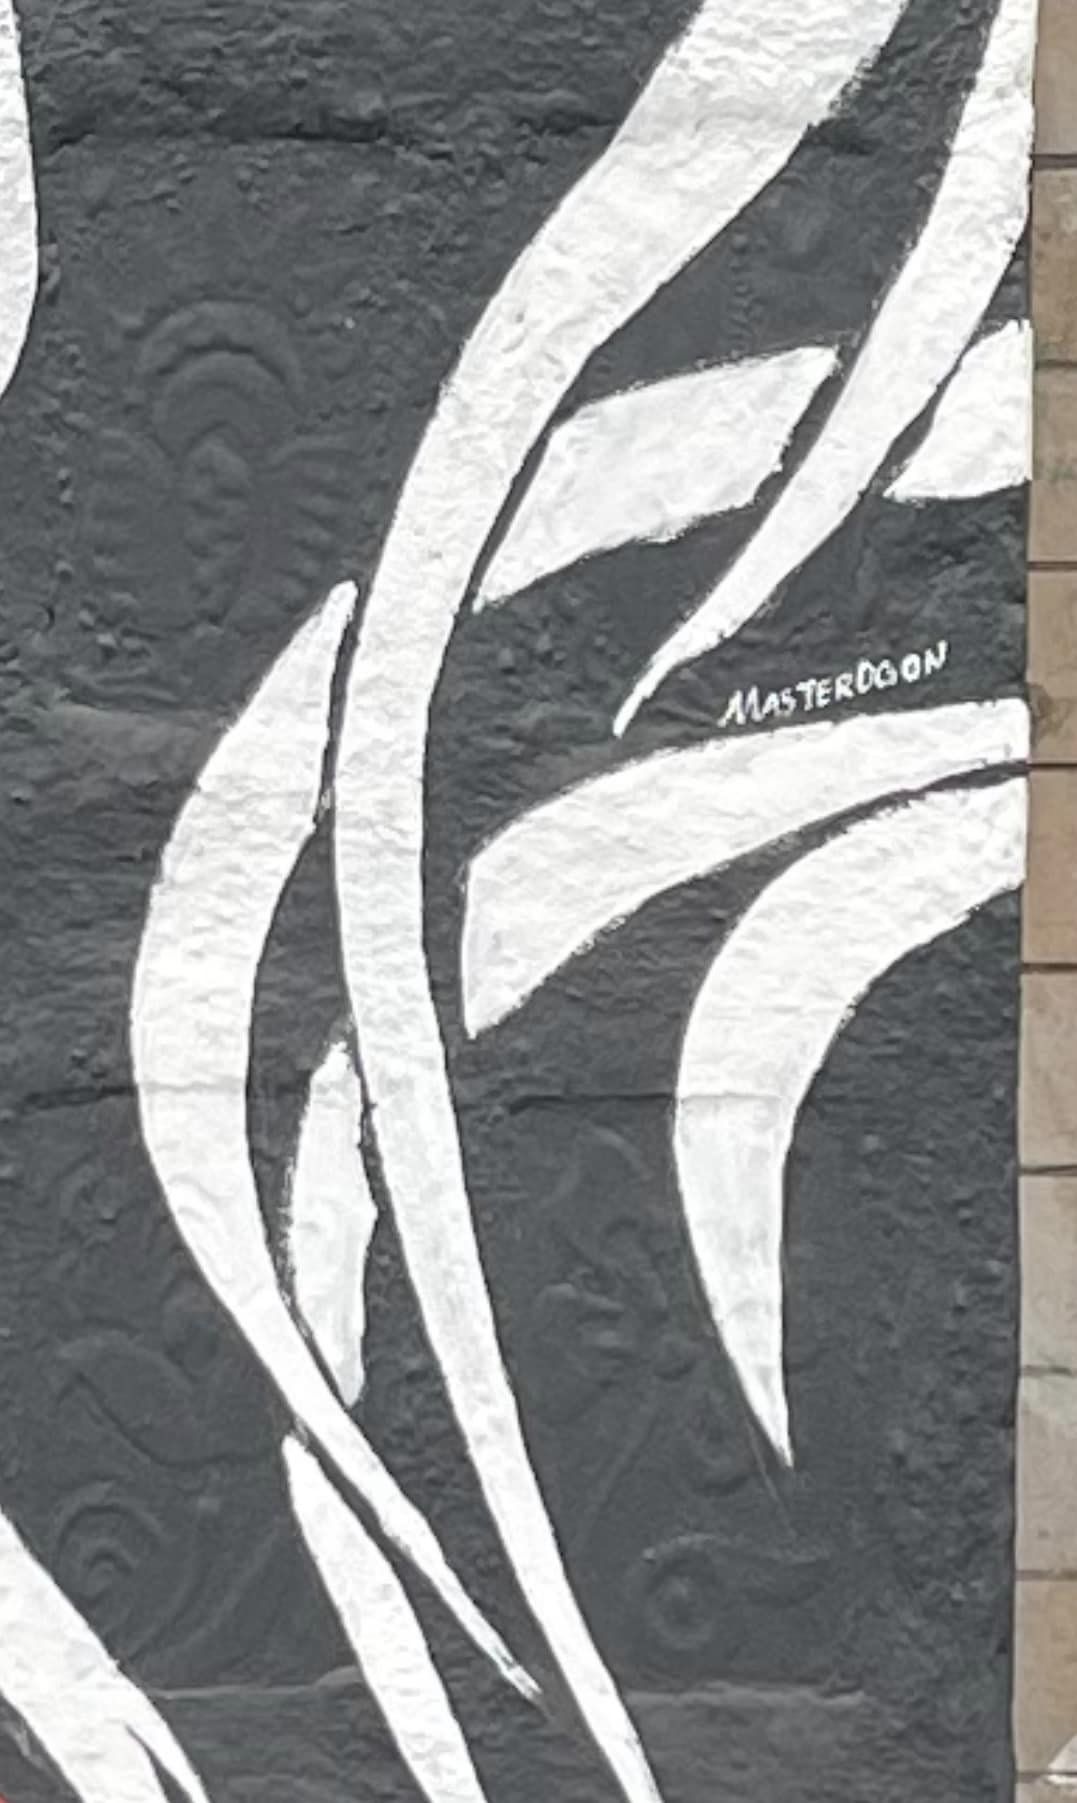 У Дніпровському районі Києва декоративне керамічне панно 1970-х років замалювали рекламою перукарні